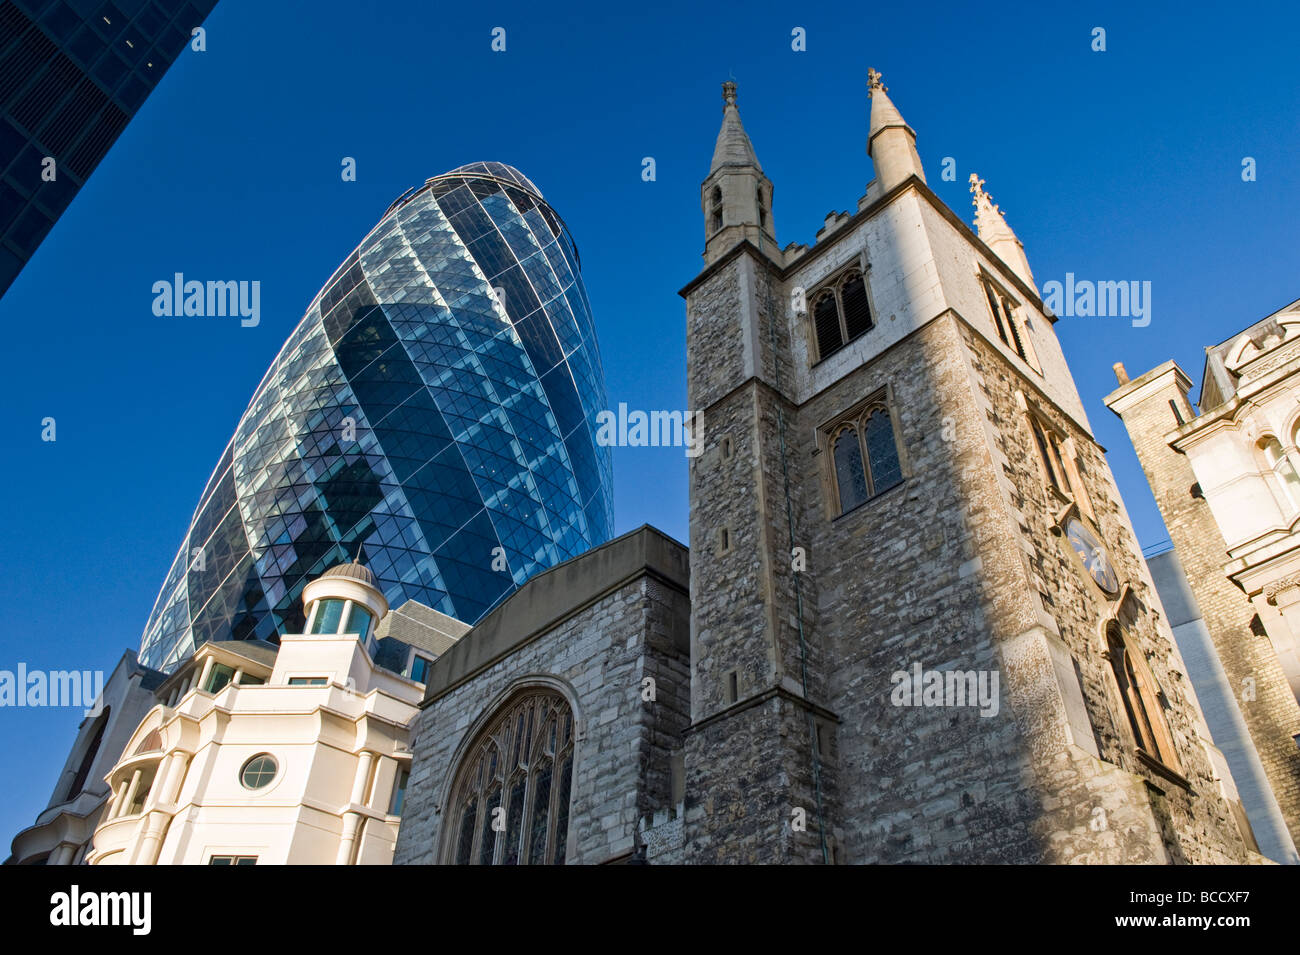 L'église St Andrew Undershaft et le Gherkin ou le Swiss Re Building, St Mary Axe Road, City of London, England, UK Banque D'Images